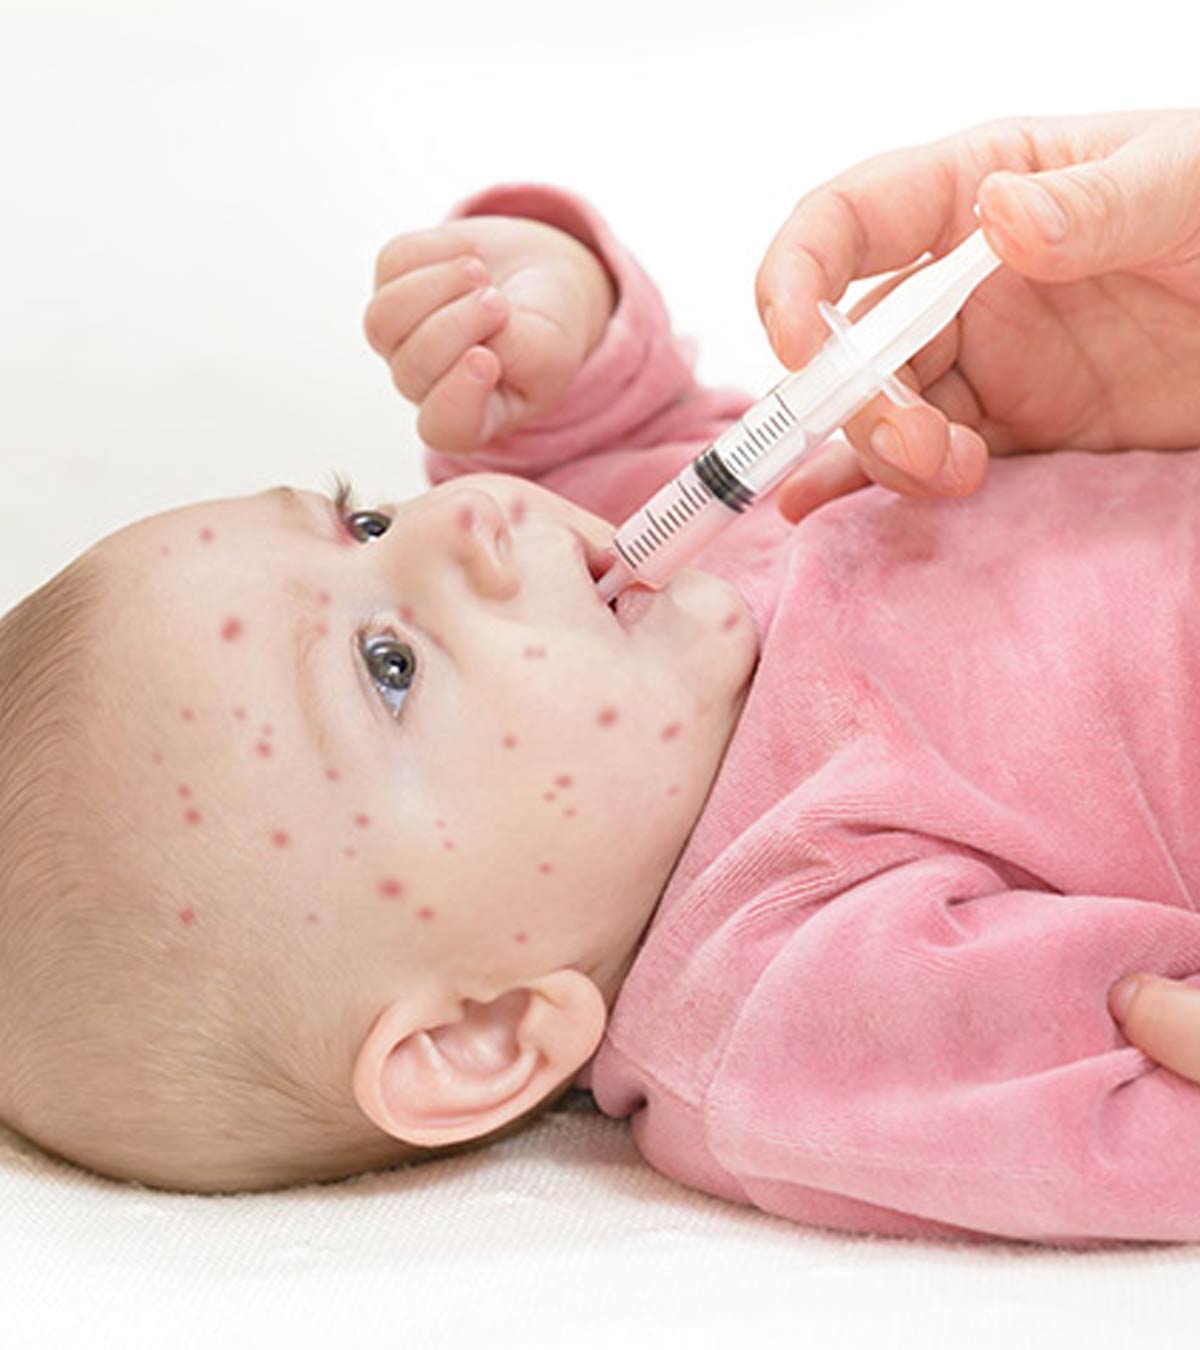 婴儿麻疹:症状、原因和治疗